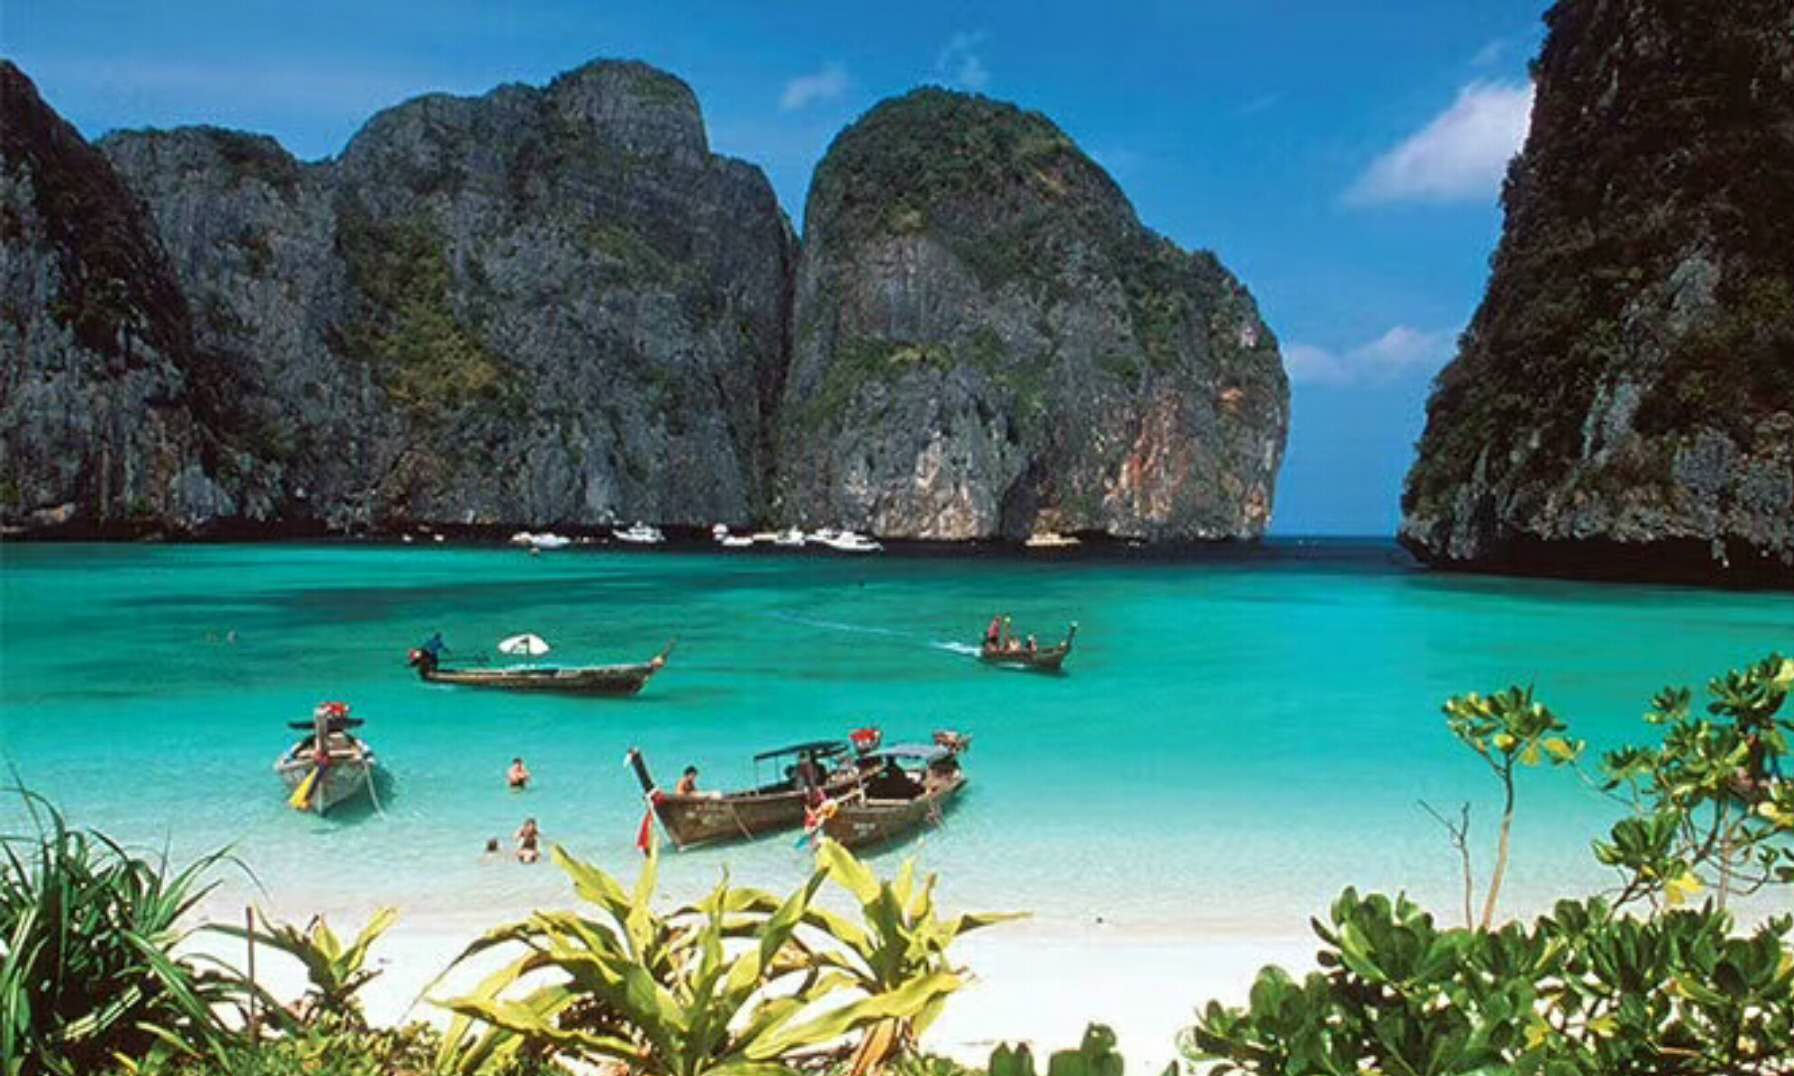 谈起泰国风光旖旎的岛屿,也许你会毫不犹豫的想起享誉世界的著名旅游